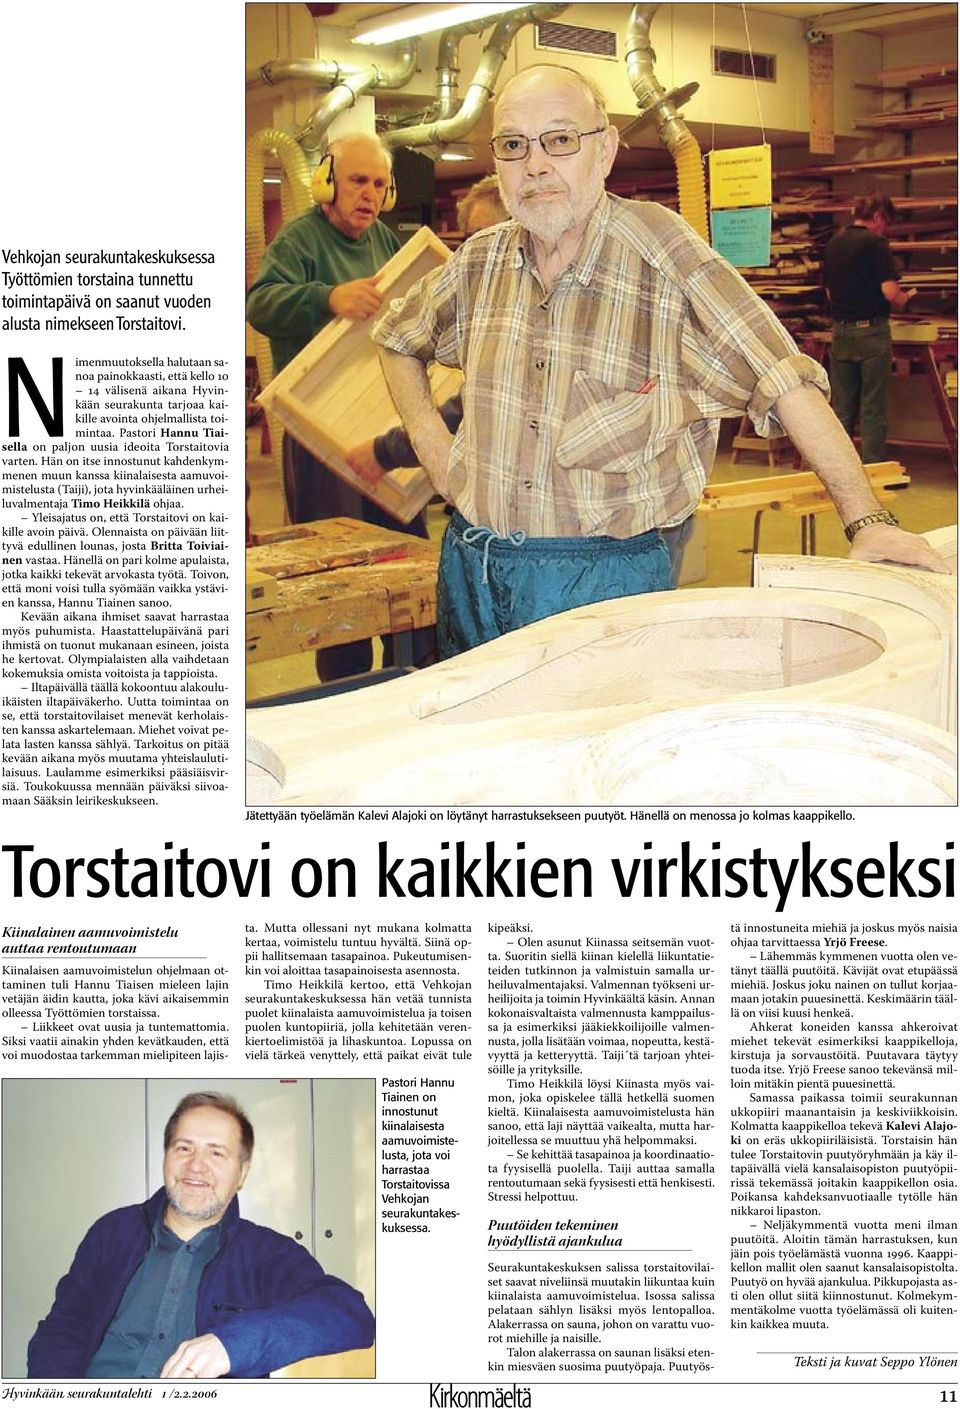 Pastori Hannu Tiaisella on paljon uusia ideoita Torstaitovia varten.